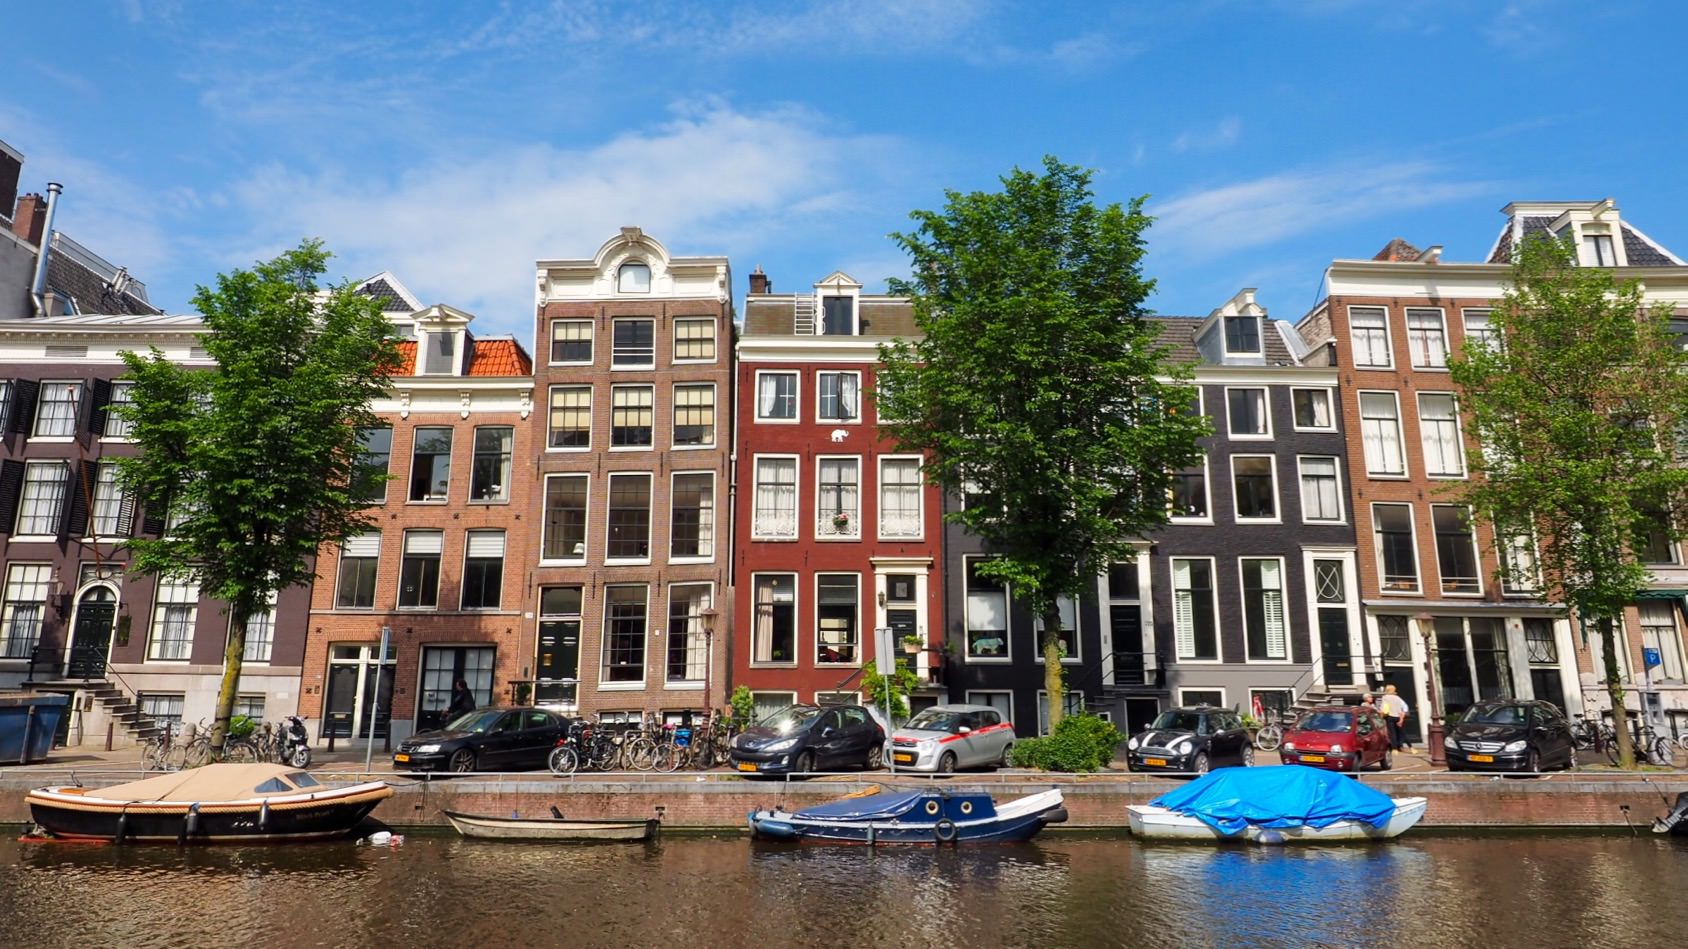 2016 荷蘭 阿姆斯特丹 行程總覽 - 一口冒險 Bitesized Adventure